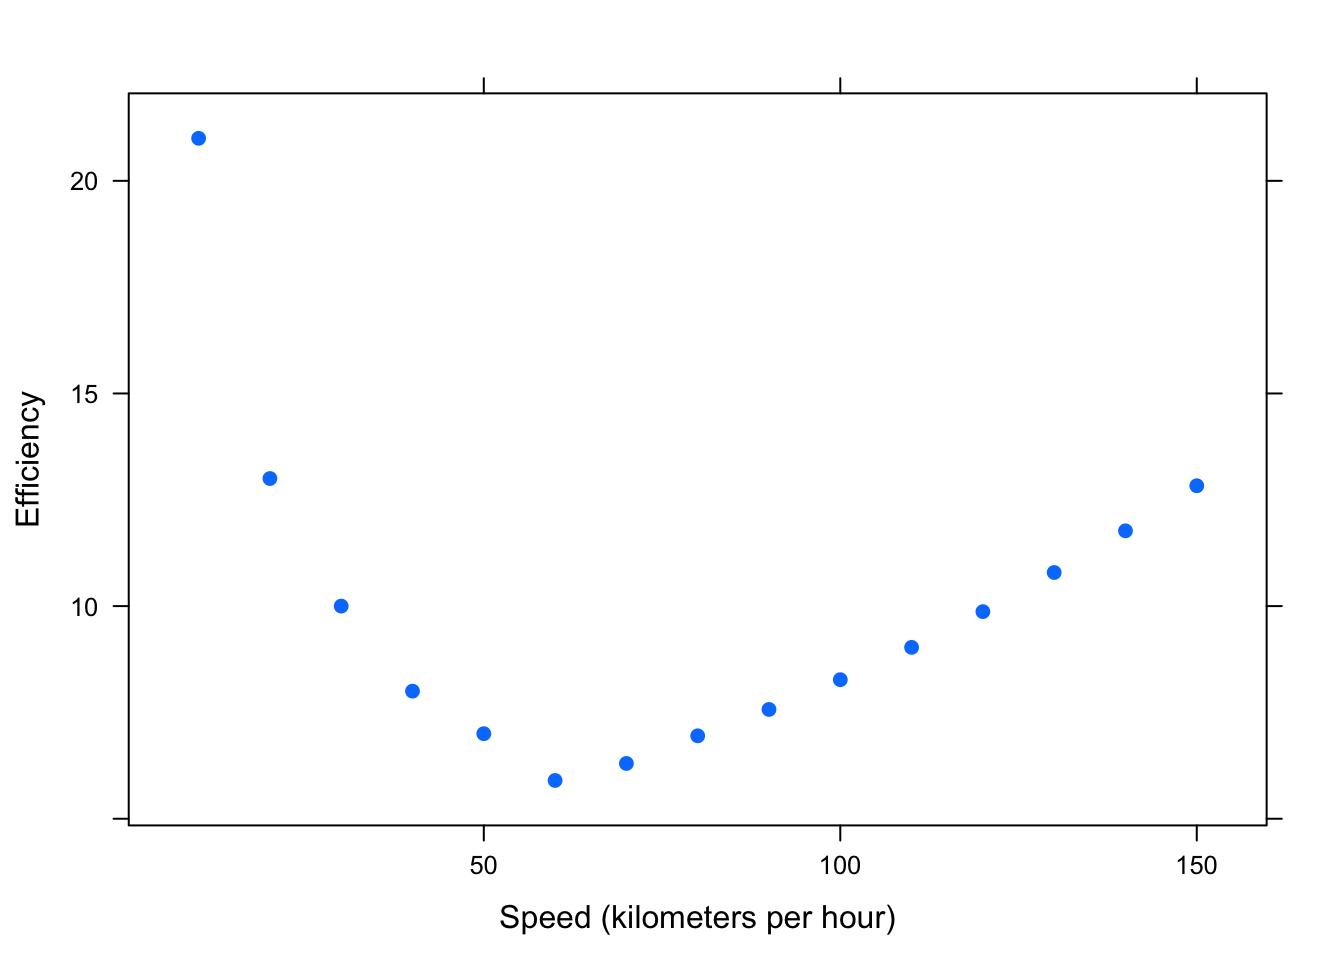 Curvilinear: Efficiency (liters of fuel required to travel 100 kilometers) versus Speed (kilometers per hour)